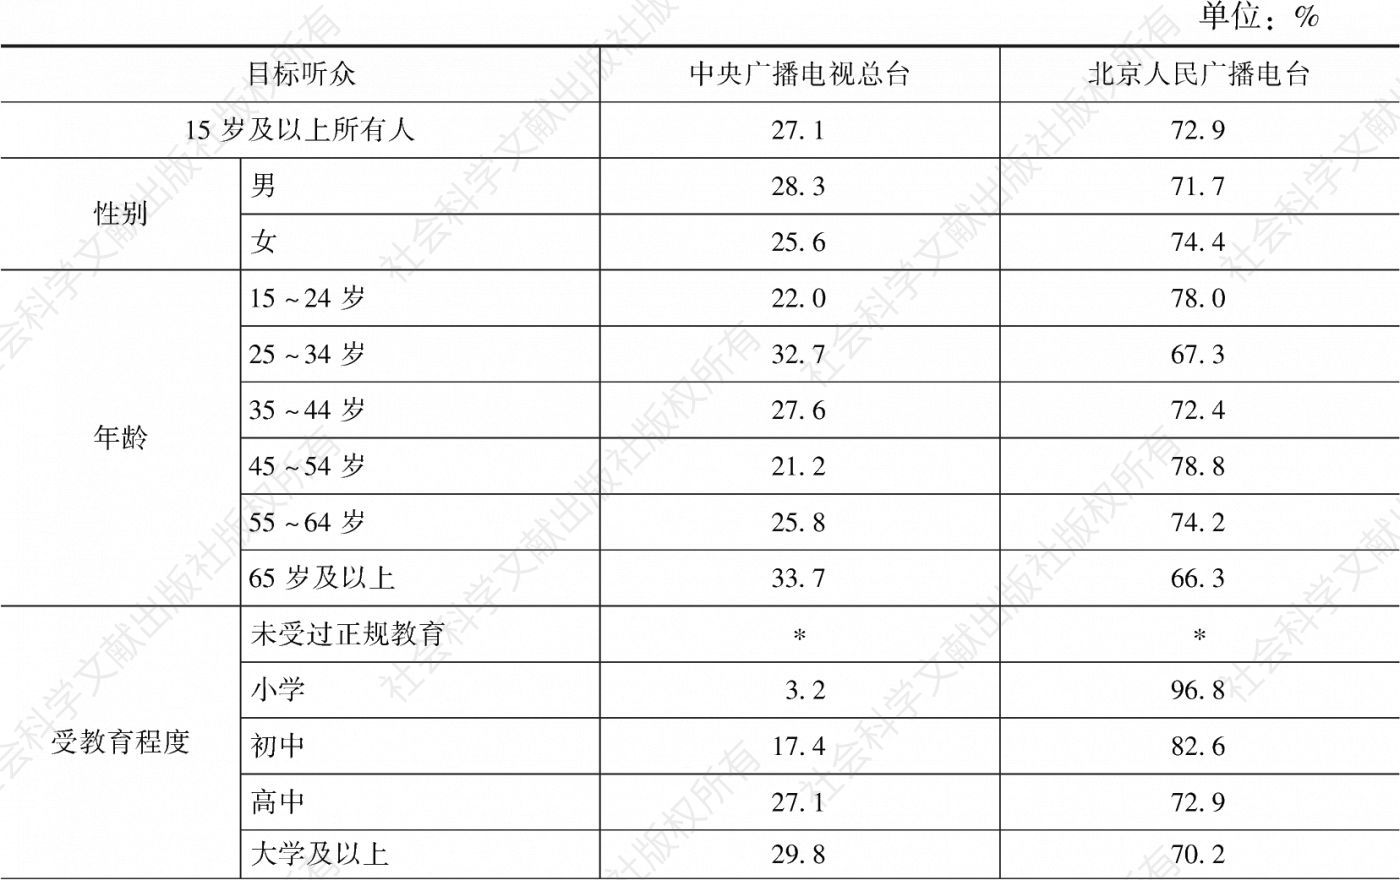 表4.1.5 2020年北京市场各广播电台在不同目标听众中的市场份额